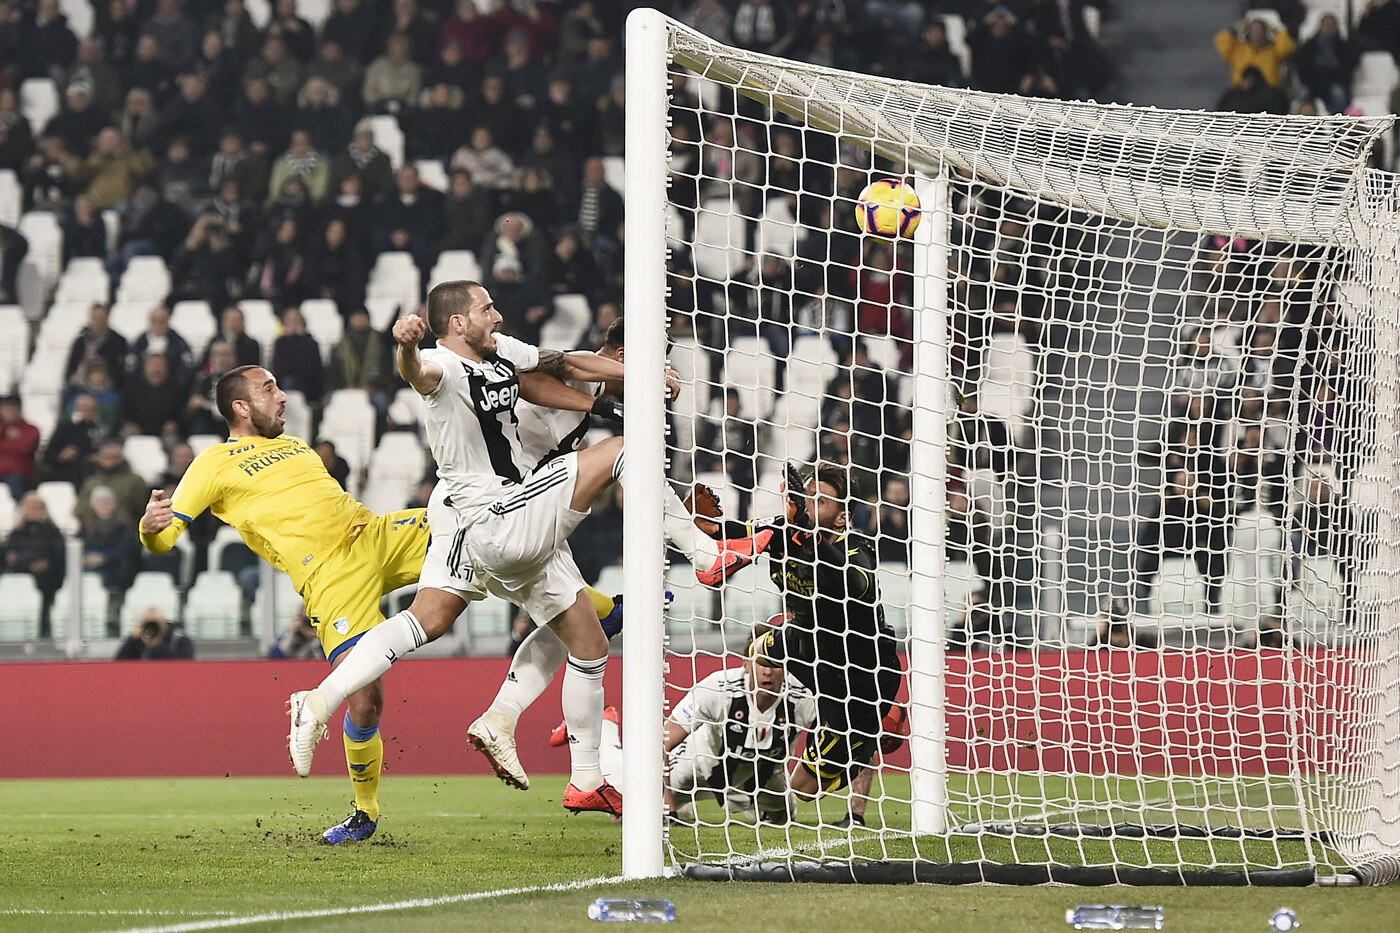 Serie A, Juventus-Frosinone 3-0 | Il fotoracconto